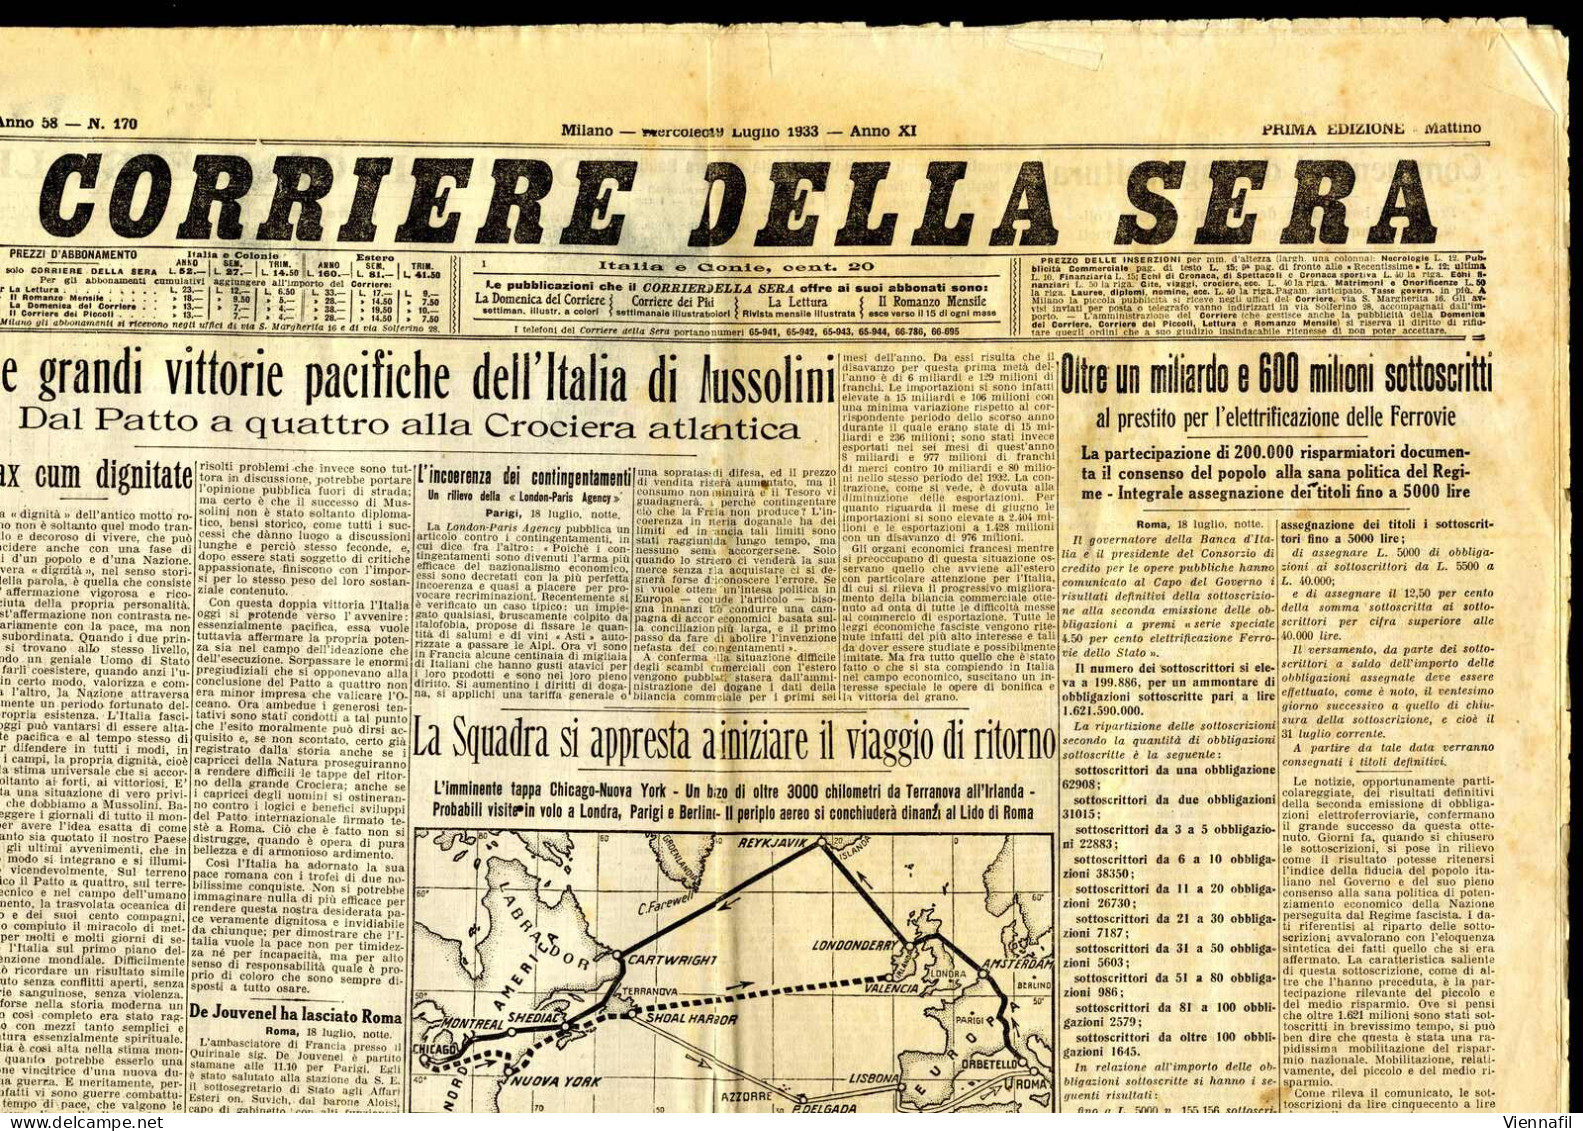 cover 1933, 13 giornali "Corriere della Sera" e un supplemento al "Il Secolo Illustrato", tutti con interessanti articol